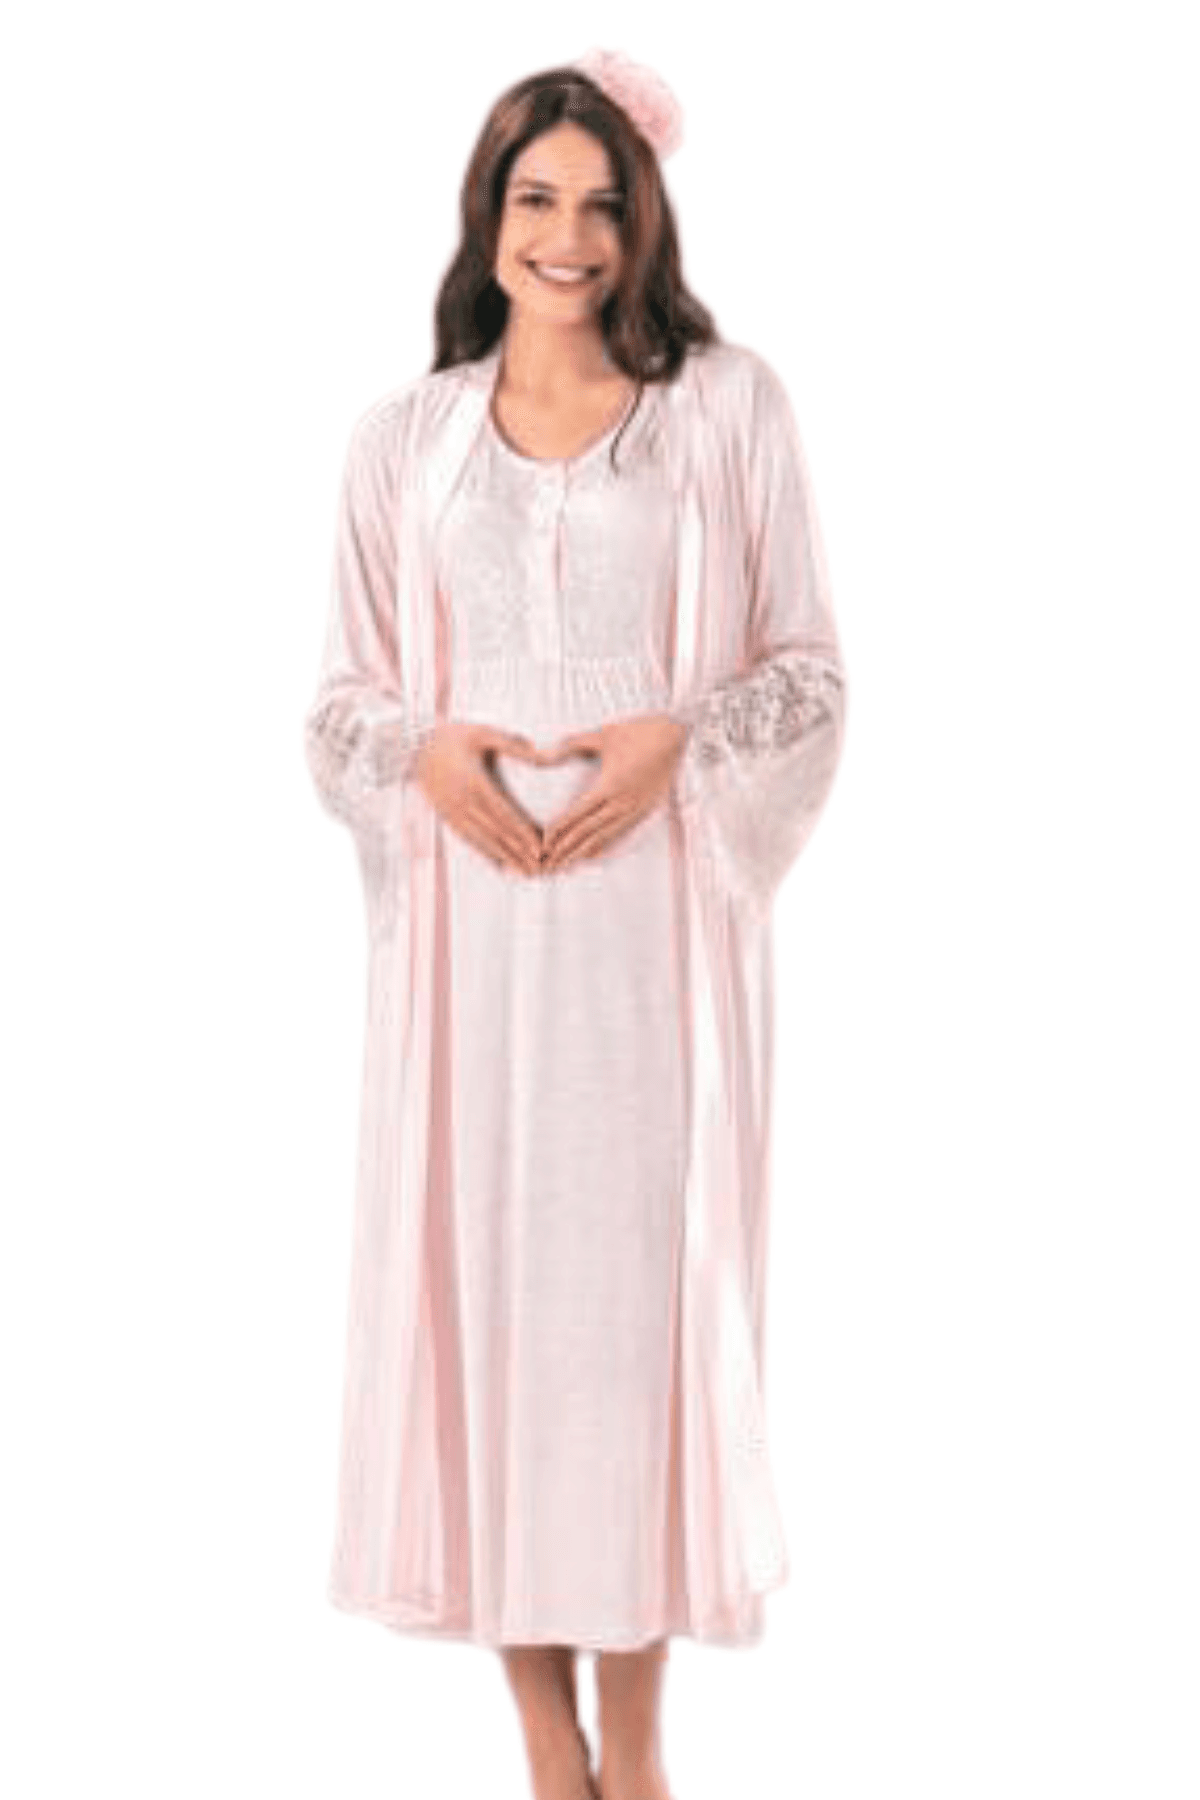 Selected image for FLZ Haljina i haljina pidžama za trudnice, puder - kod 3226